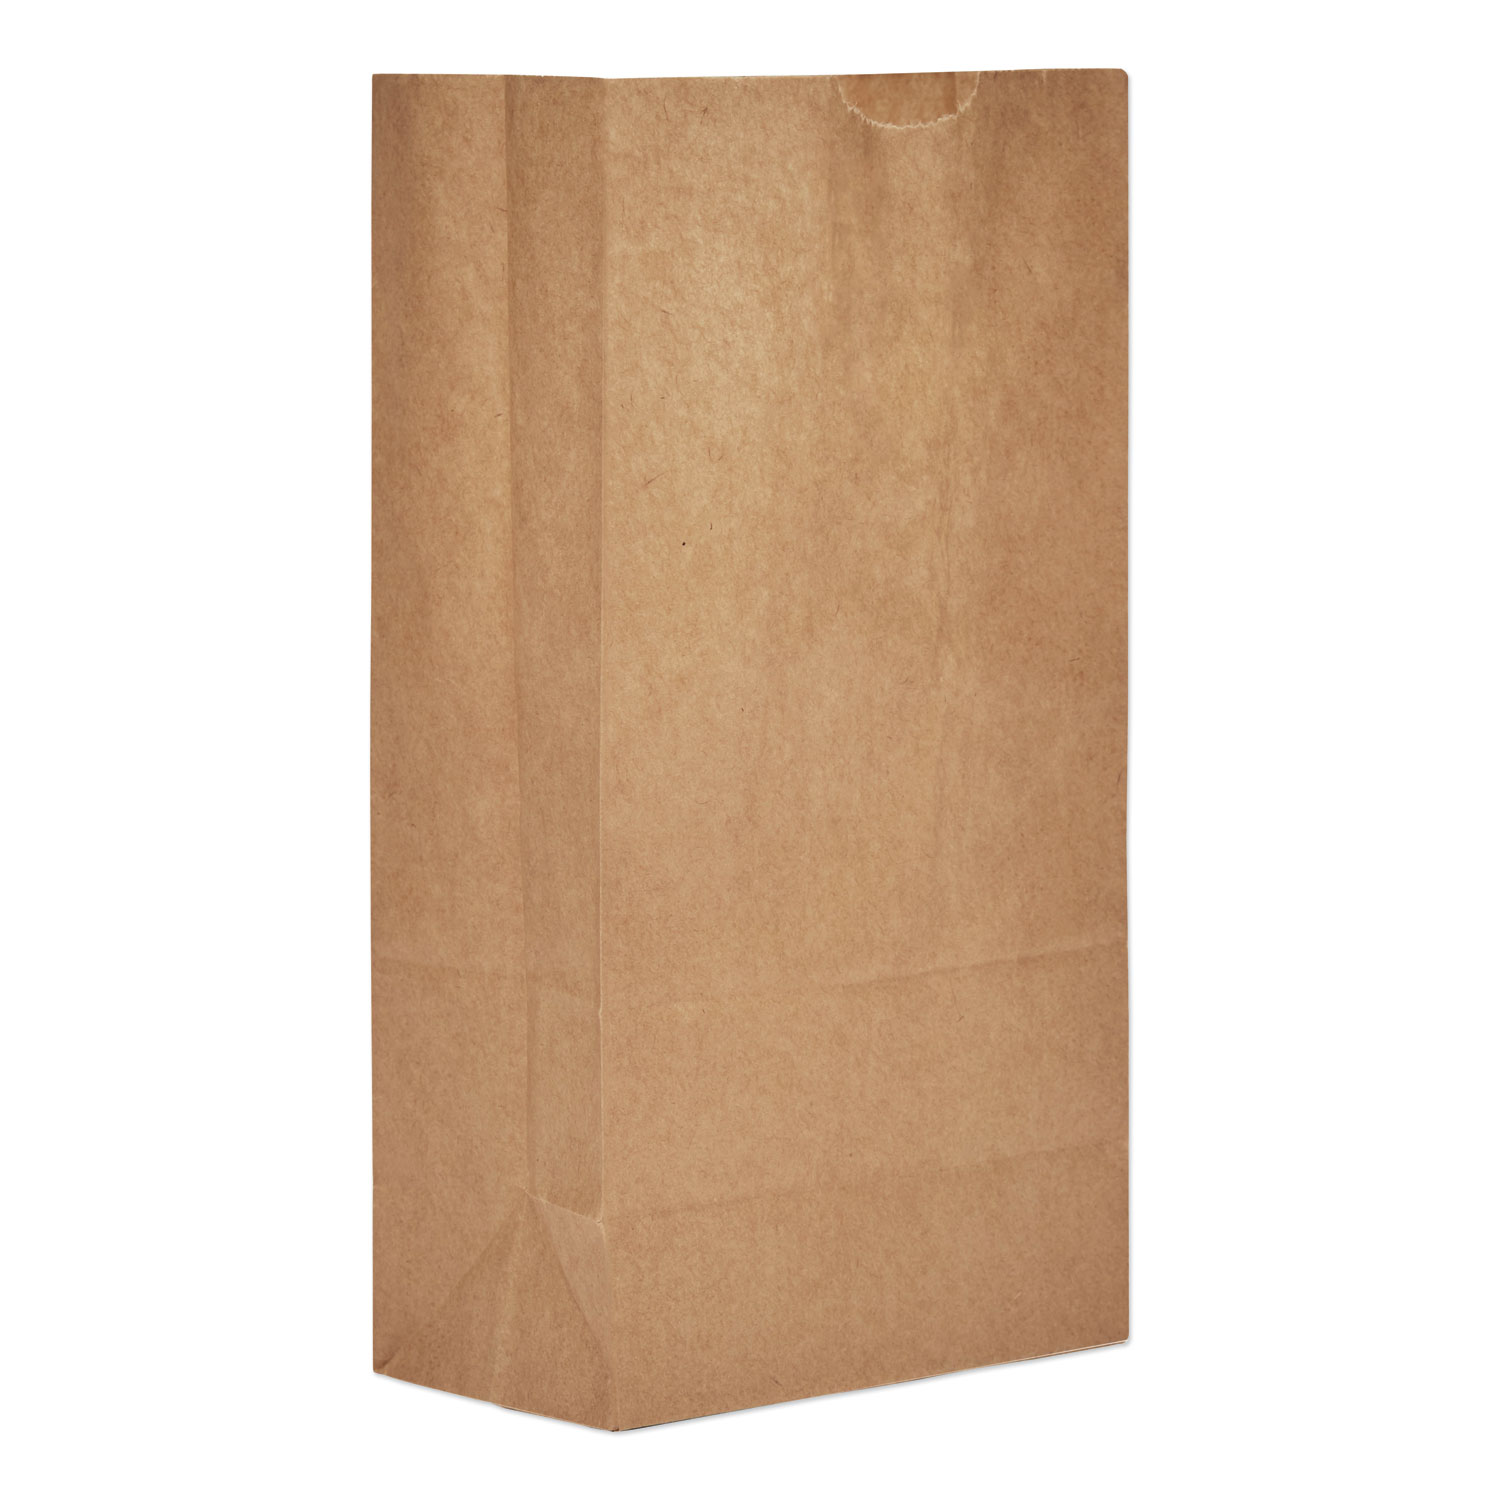  General BAG GK5 Grocery Paper Bags, 30 lbs Capacity, #5, 5.25w x 3.44d x 10.94h, Kraft, 3,000 Bags (BAGGK5) 